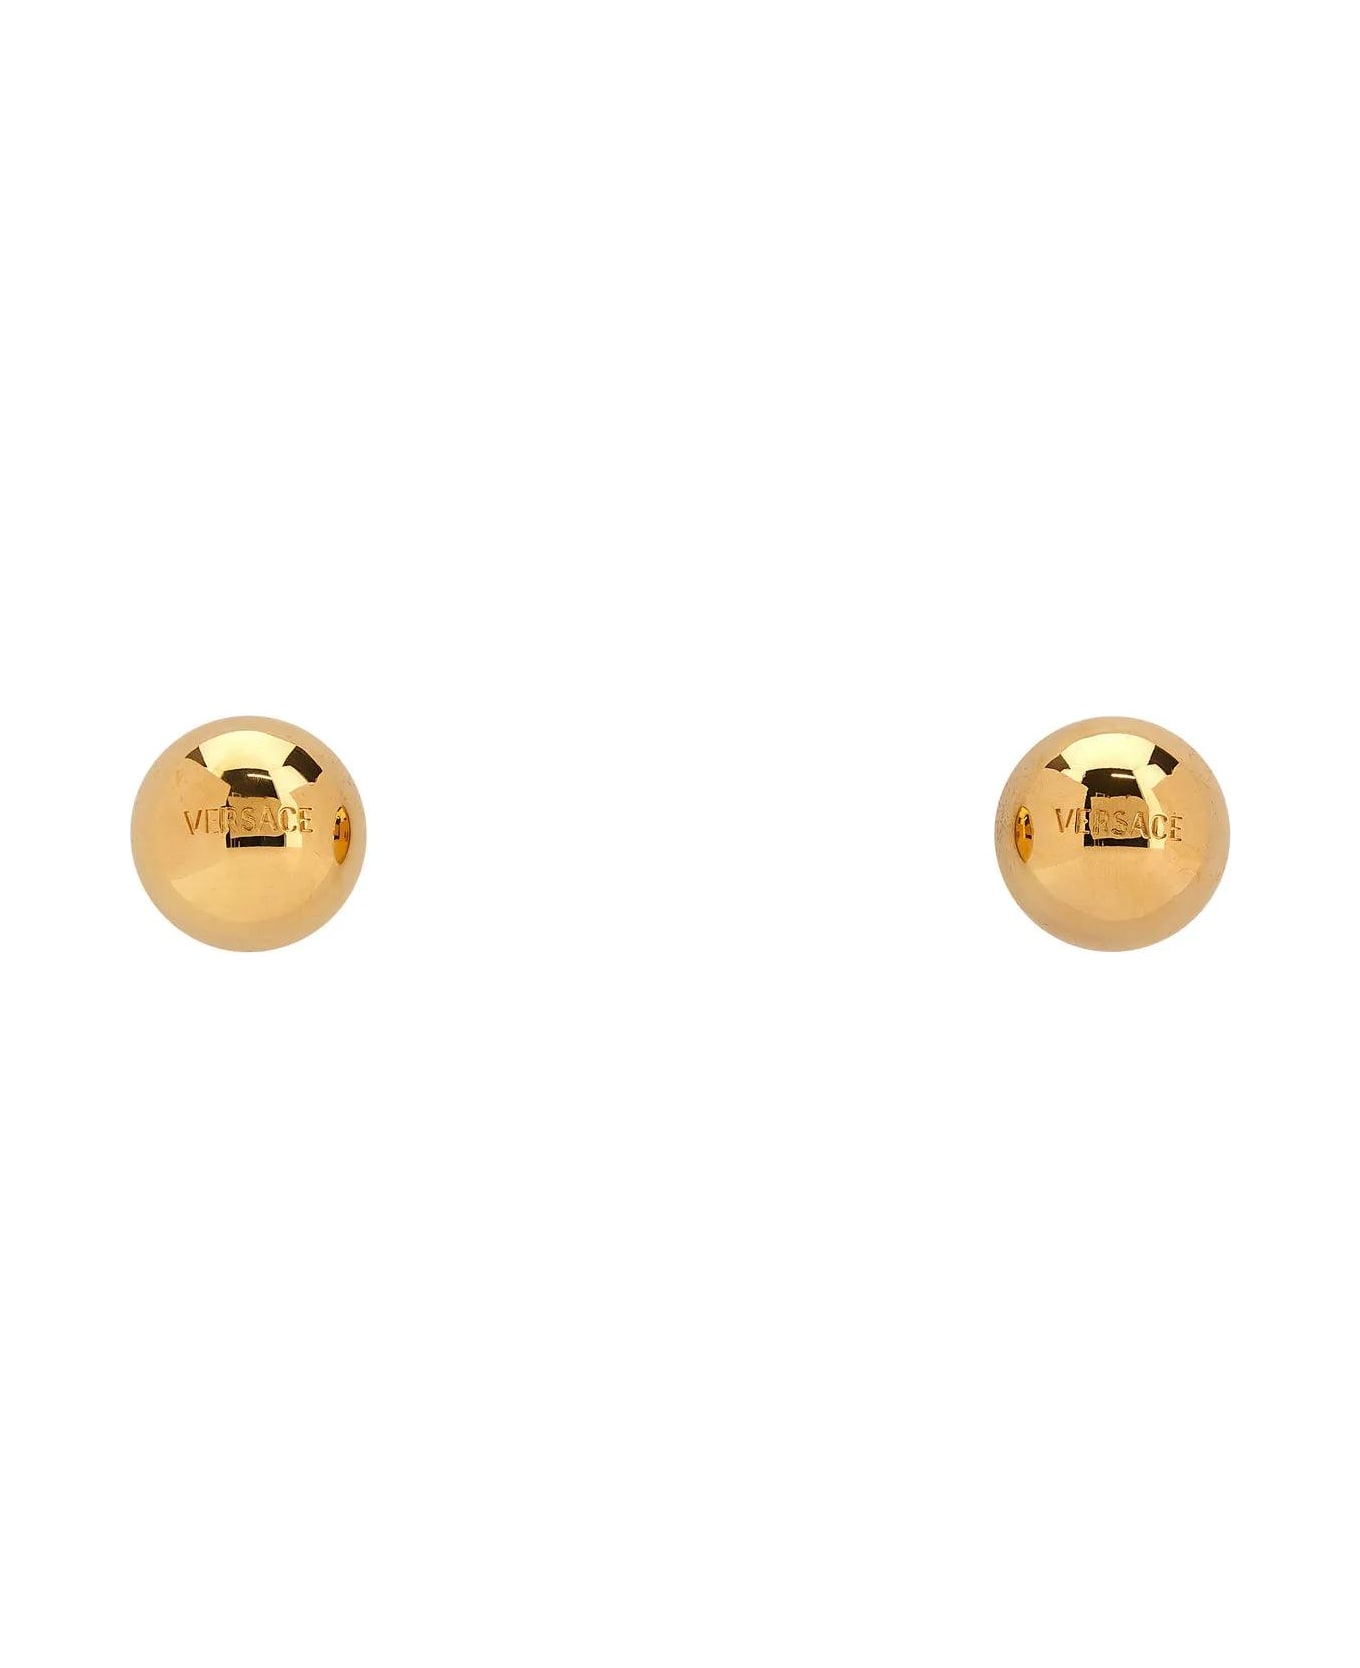 Versace Golden Metal Earrings - Giallo